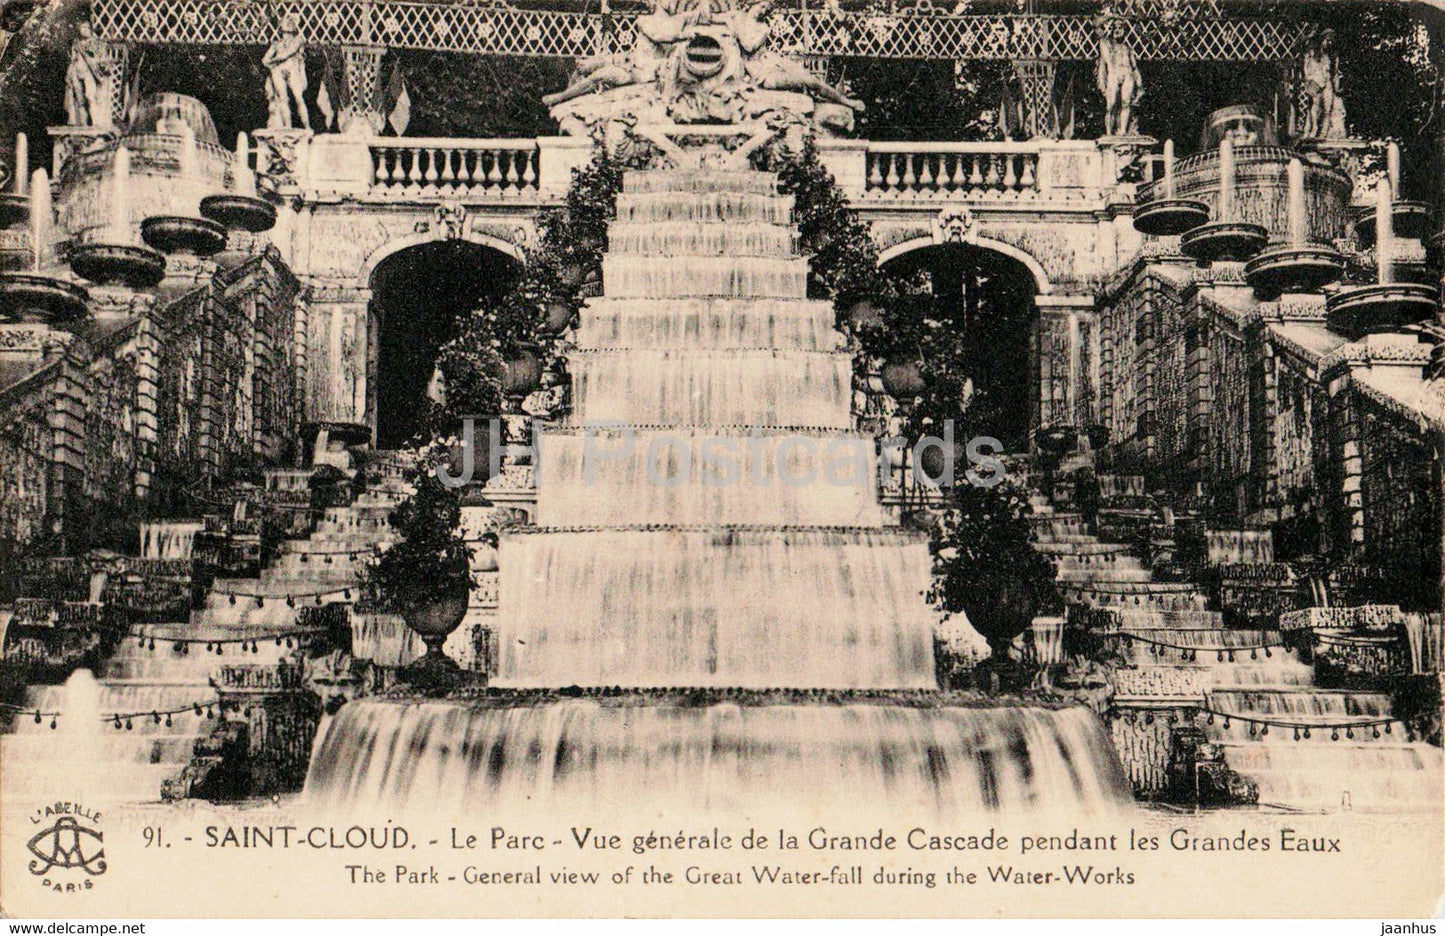 Saint Cloud - Le Parc - Vue generale de la Grande Cascade pendant les Grandes Eaux - old postcard - 1925 - France - used - JH Postcards